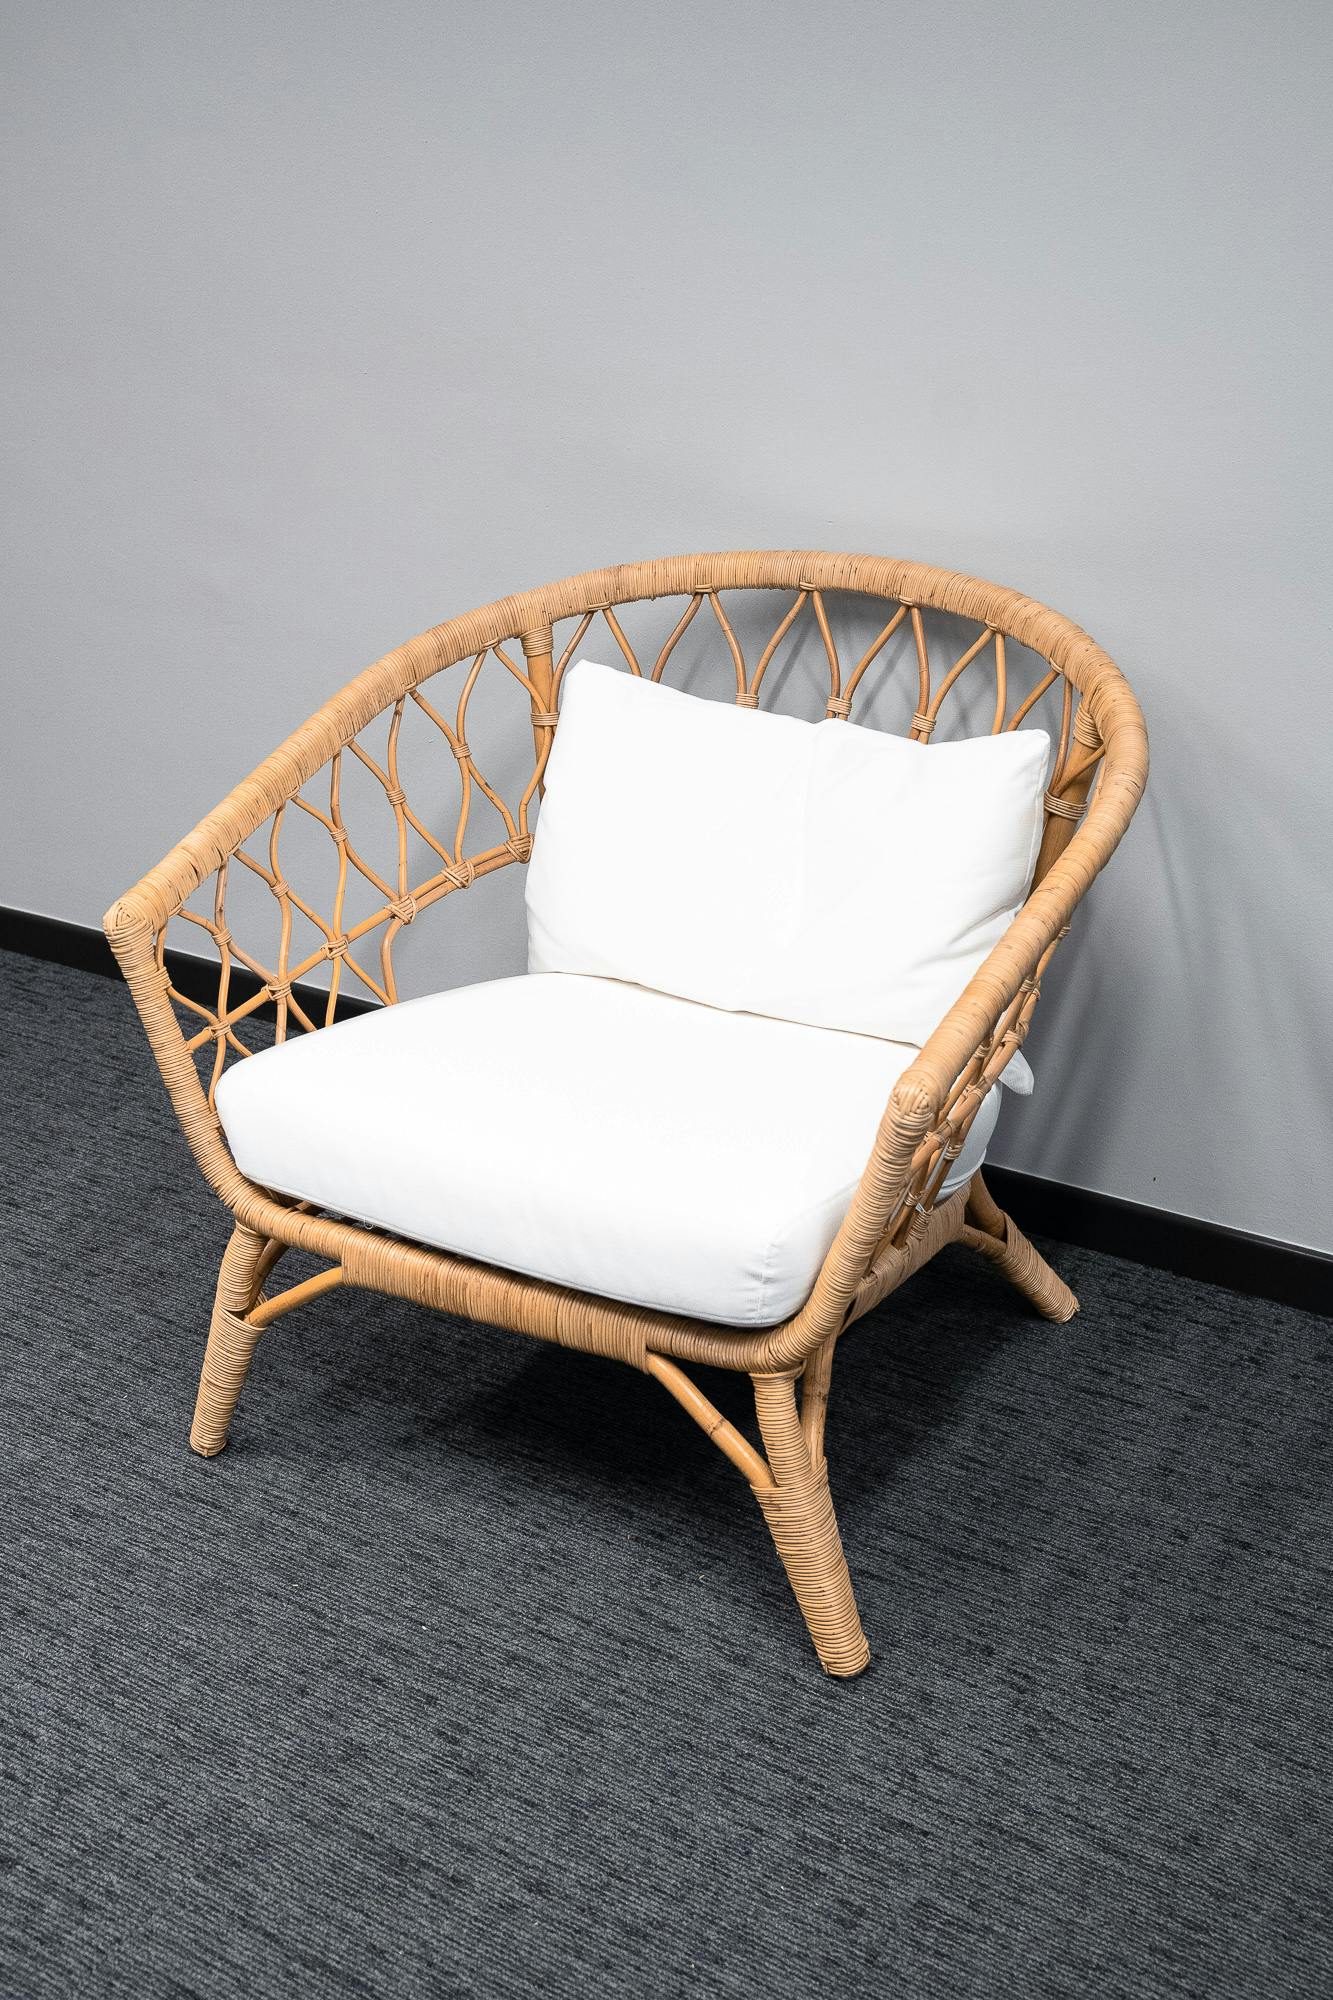 Rieten fauteuil met witte kussens - Tweedehands kwaliteit "Leunstoelen en luiers" - Relieve Furniture